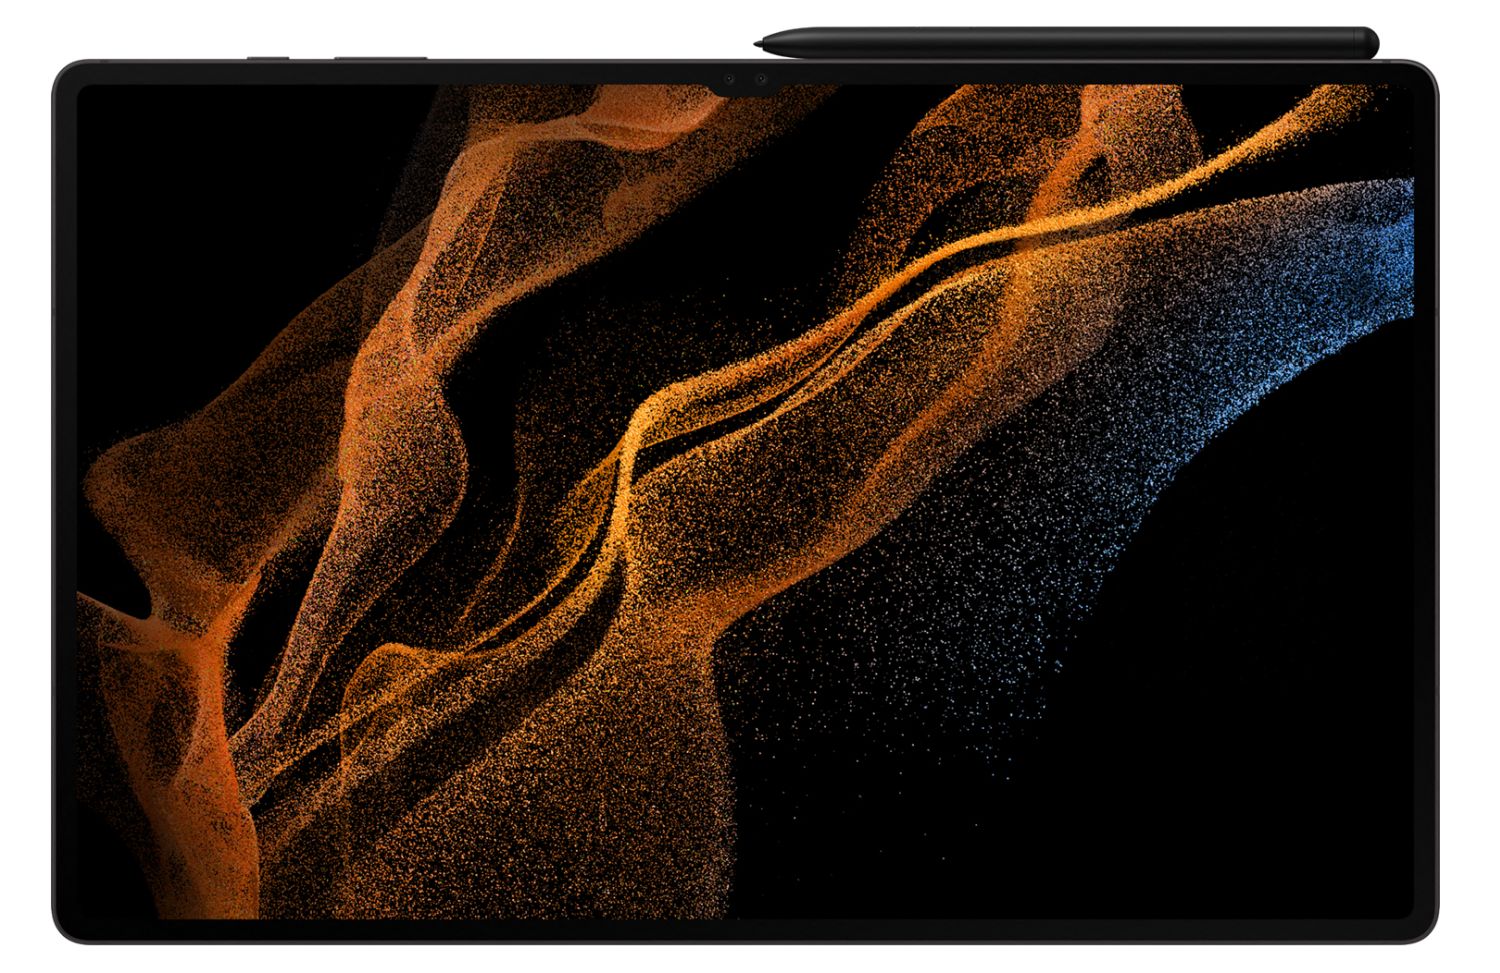 No solo el Galaxy S22: un insider filtró la presentación de las tabletas Samsung Galaxy Tab S8, Galaxy Tab S8+ y Galaxy Tab S8 Ultra